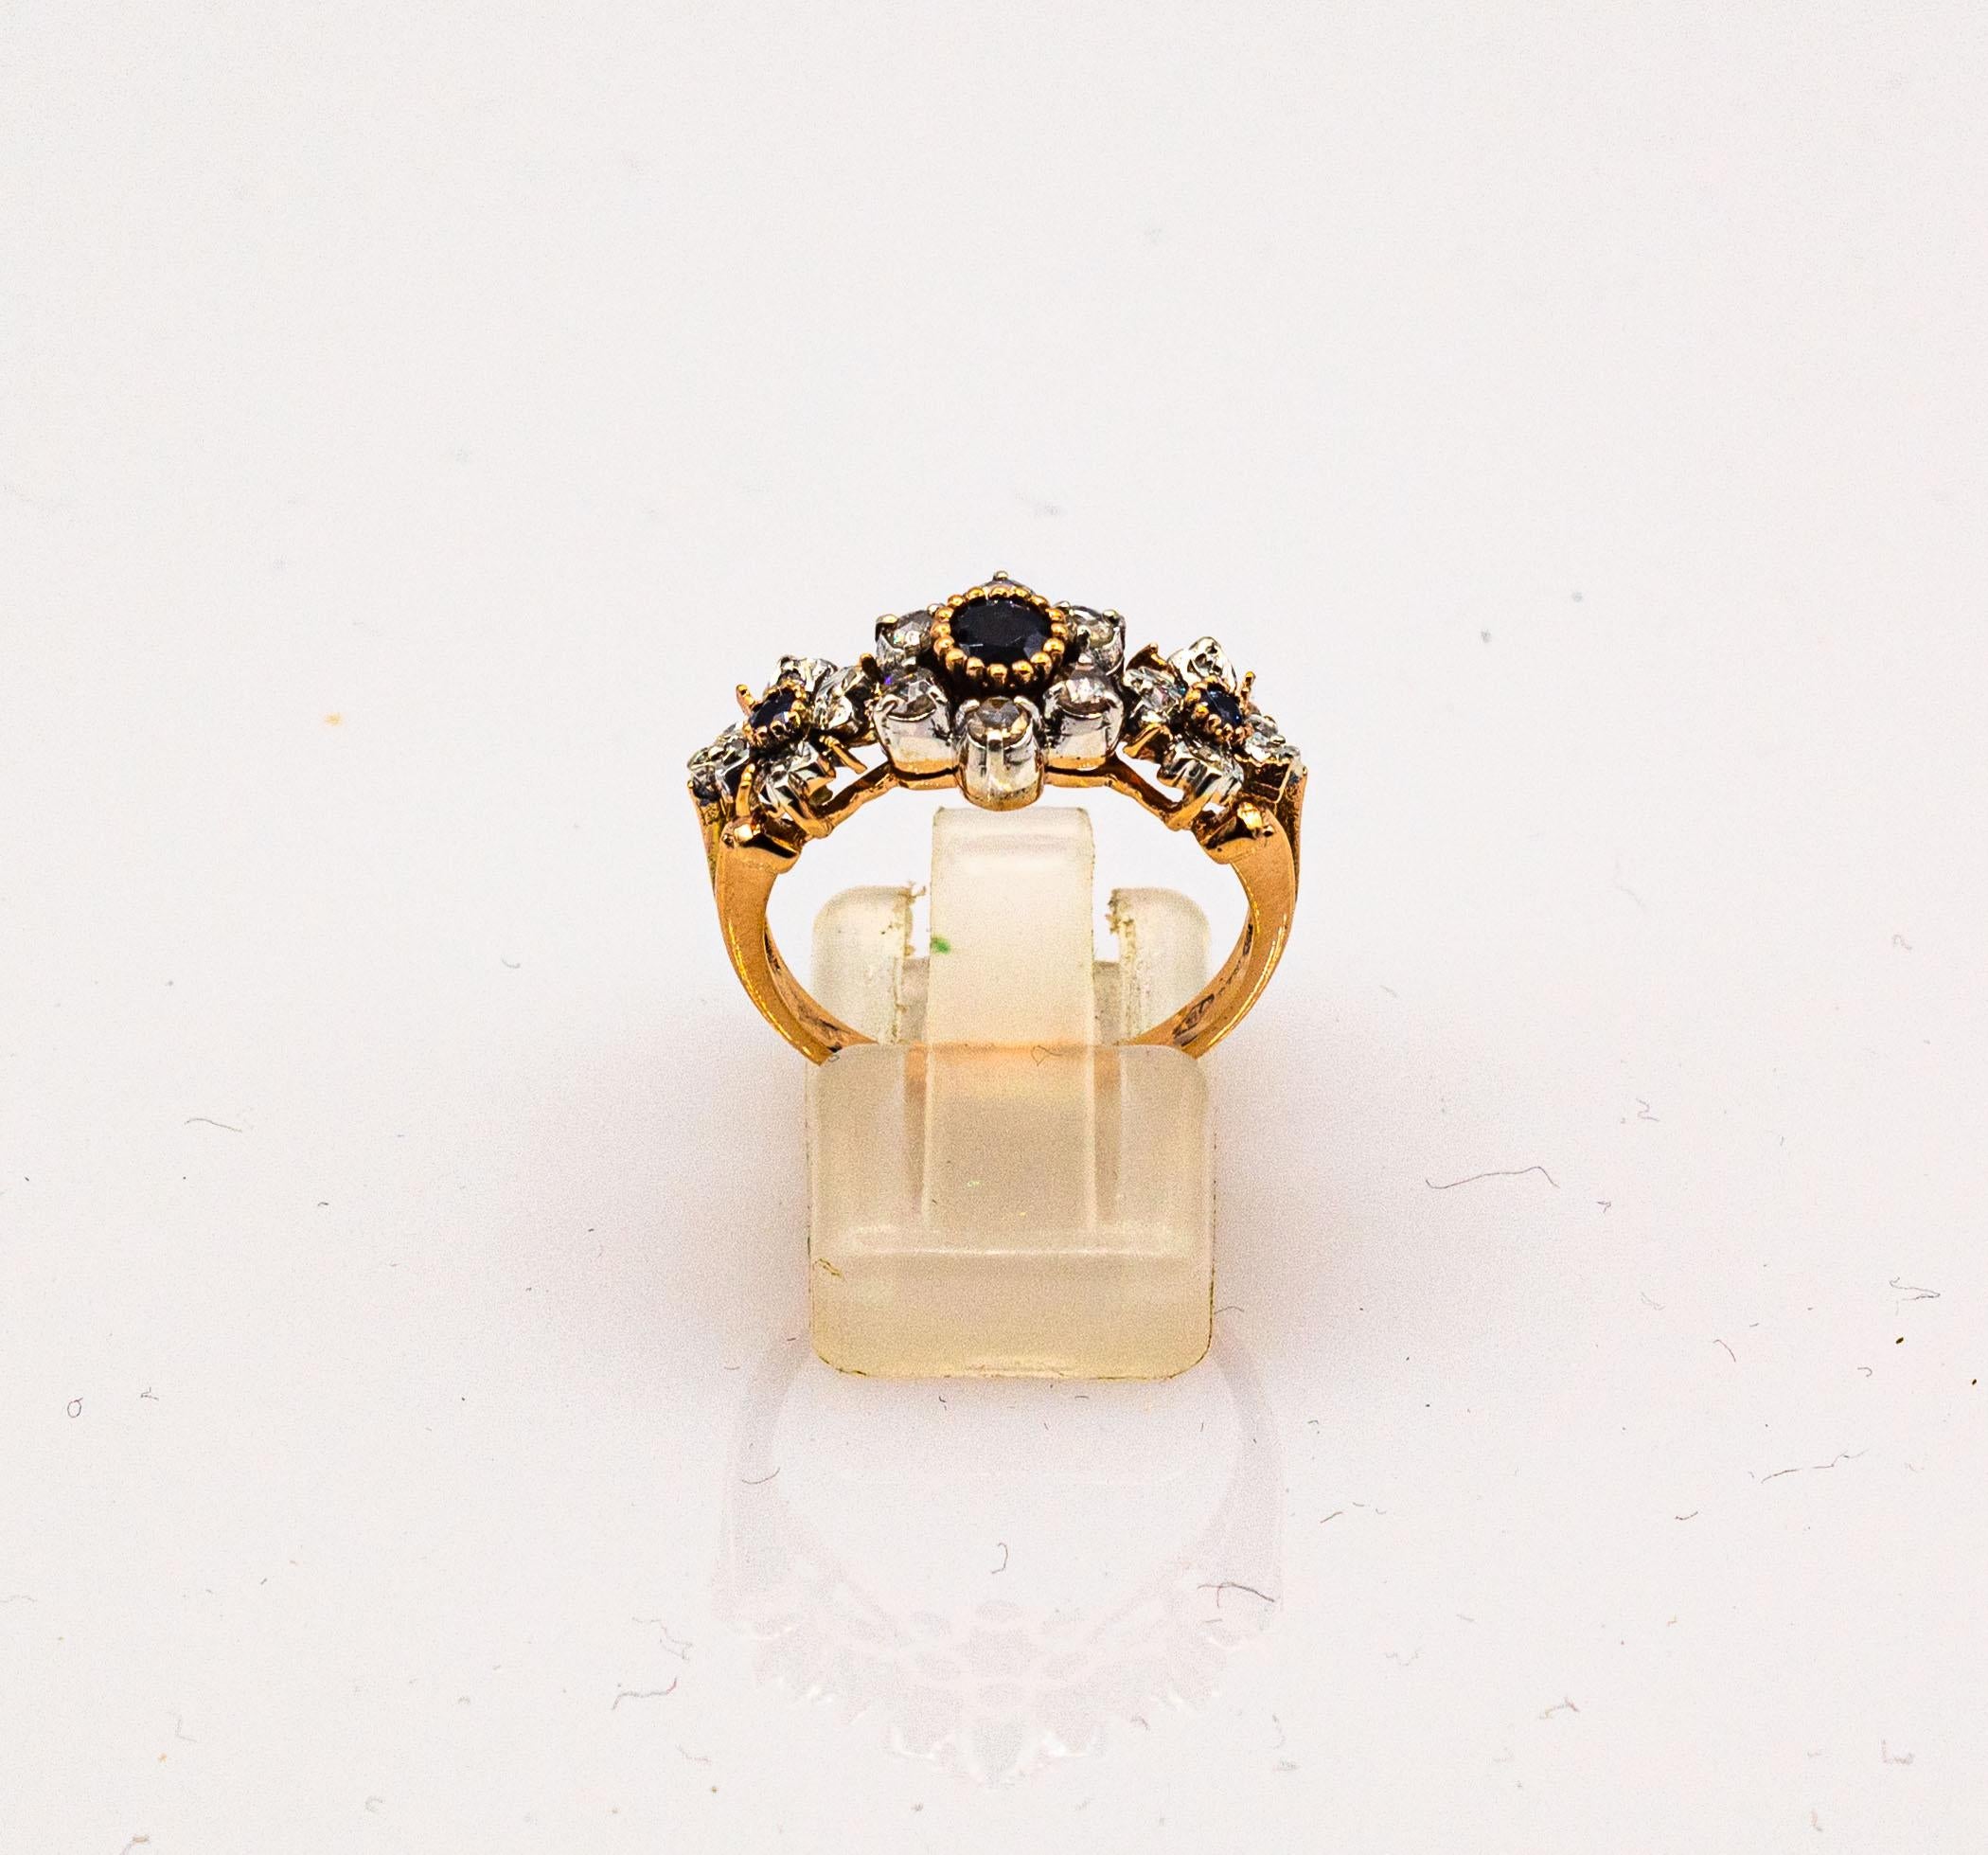 Dieser Ring ist aus 9K Gelbgold und Sterling Silber gefertigt.
Dieser Ring hat 0.22 Karat weiße Diamanten im Rosenschliff.
Dieser Ring hat 0,60 Karat moderne blaue Saphire im Rundschliff.

Dieser Ring ist auch in 14 oder 18 K Gelb- oder Weißgold